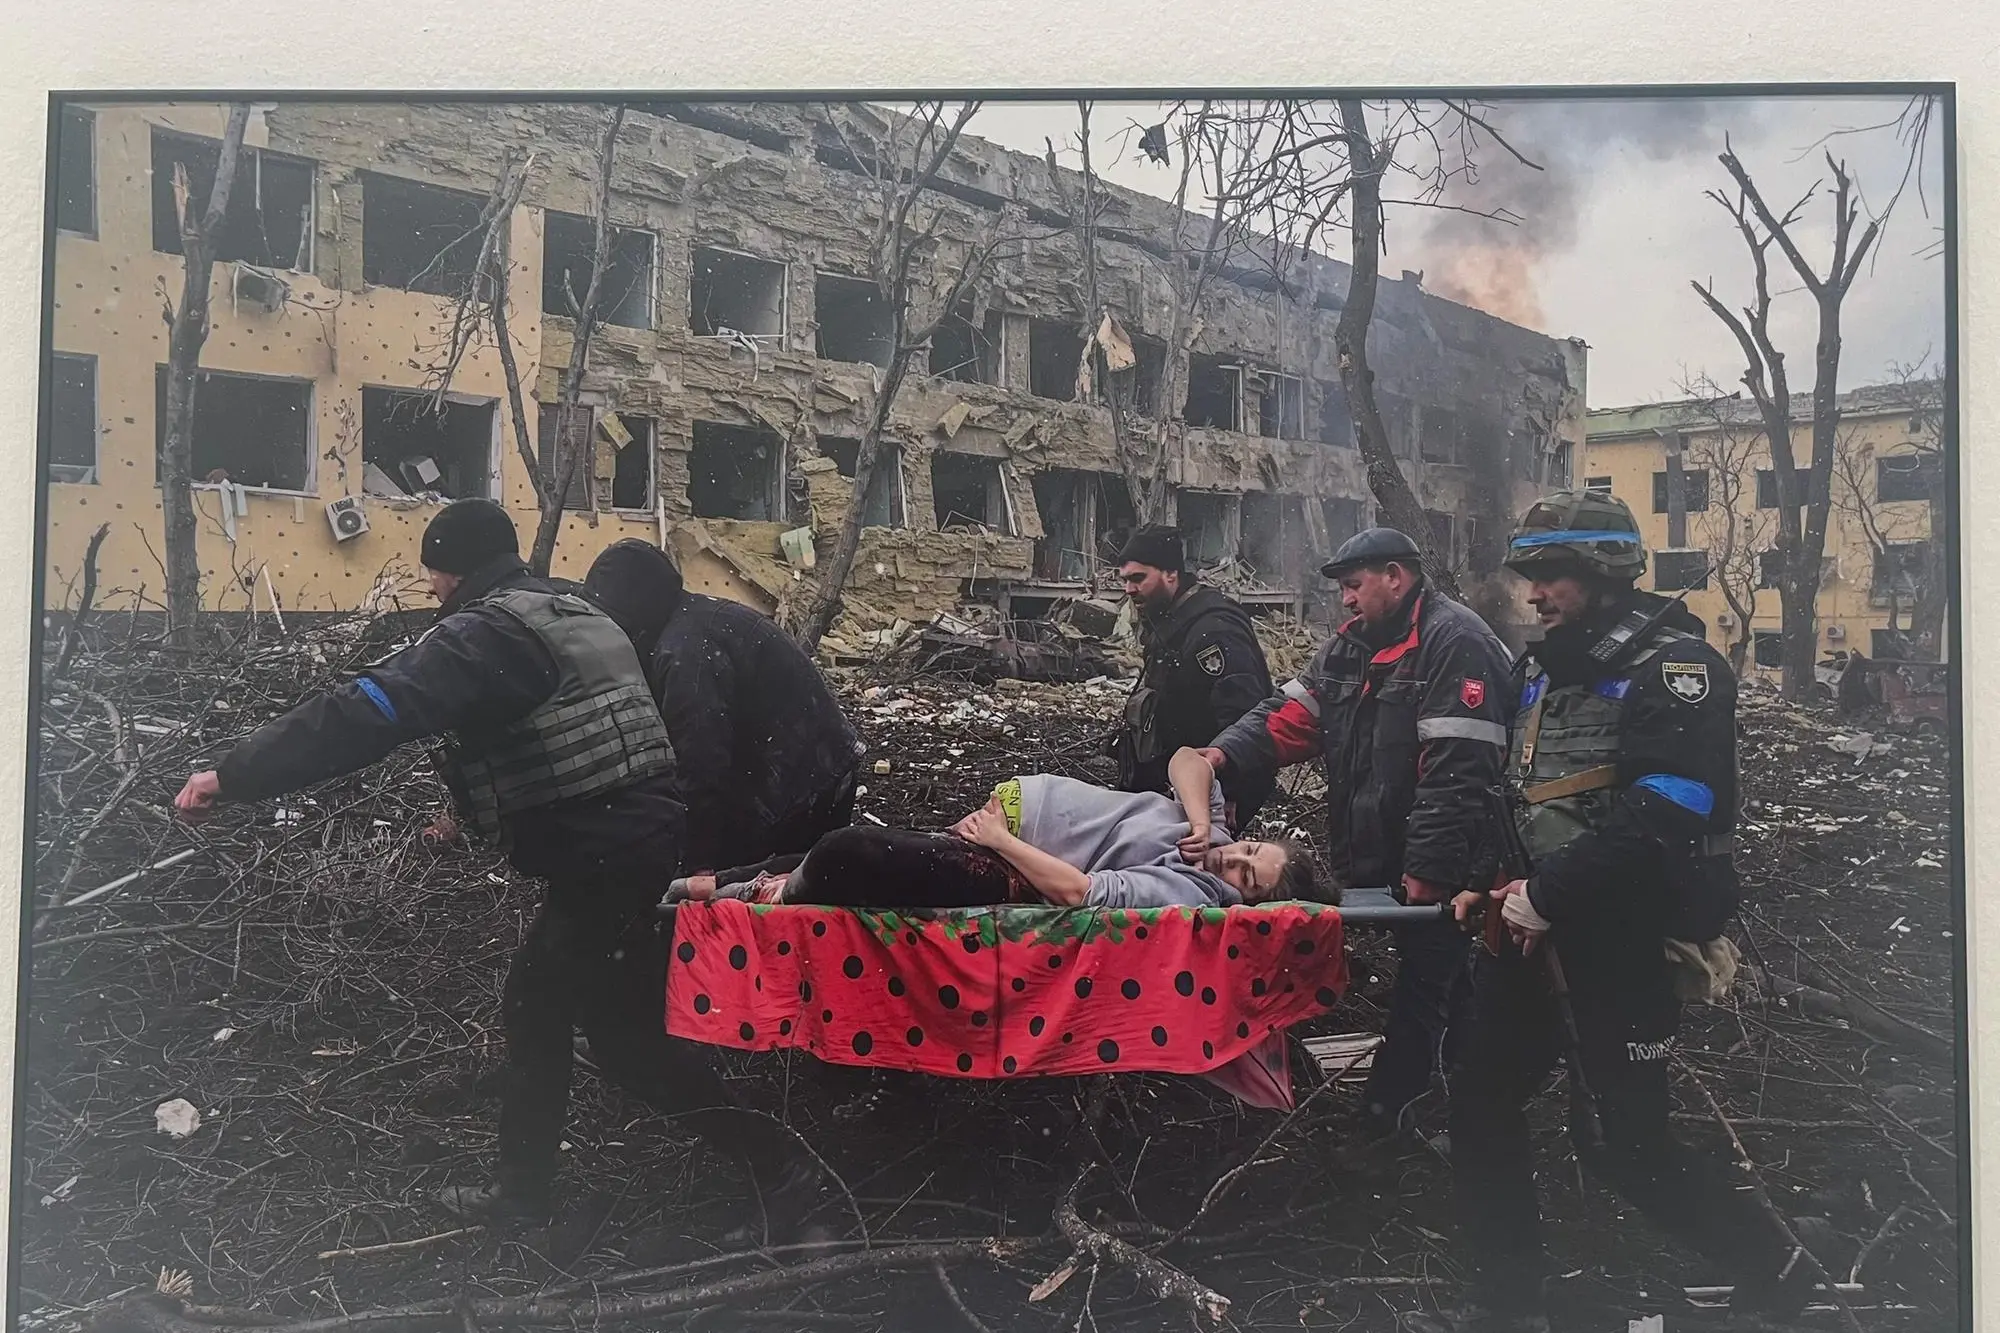 Riproduzione della foto vincitrice del concorso: la donna incinta ferita a morte in Ucraina (foto V. Pinna)